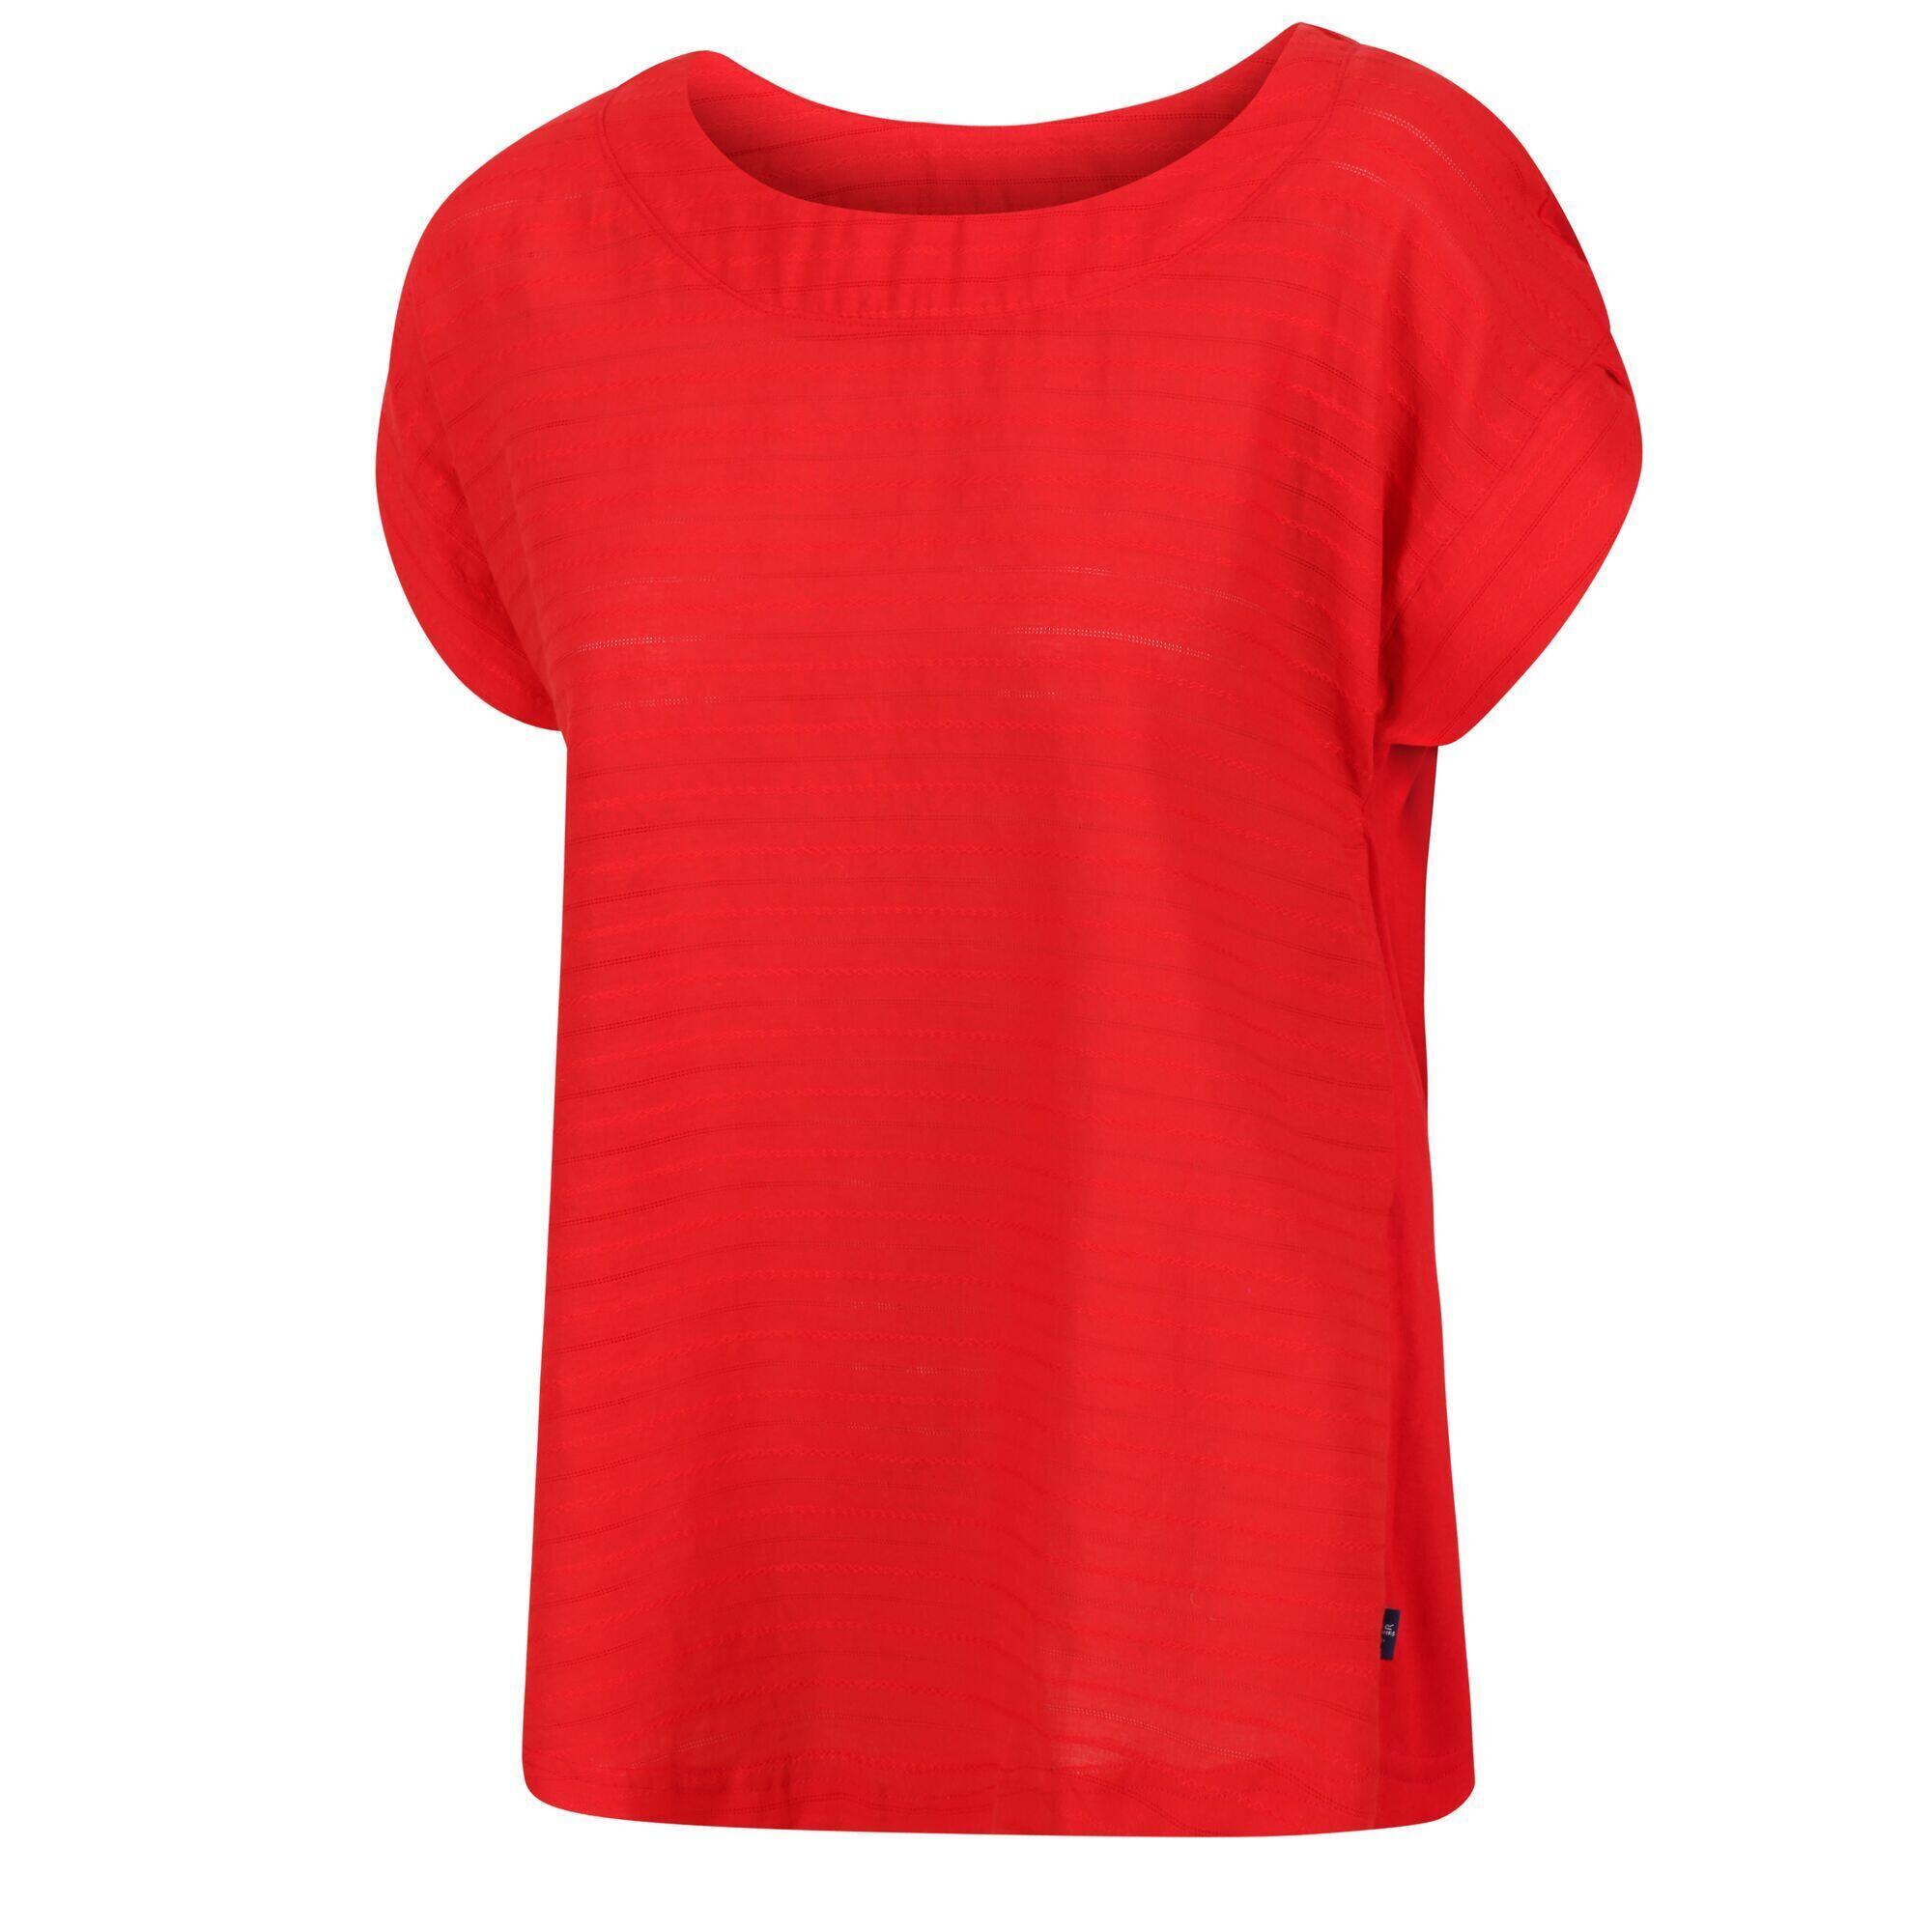 Womens/Ladies Adine Stripe TShirt (True Red) 4/5